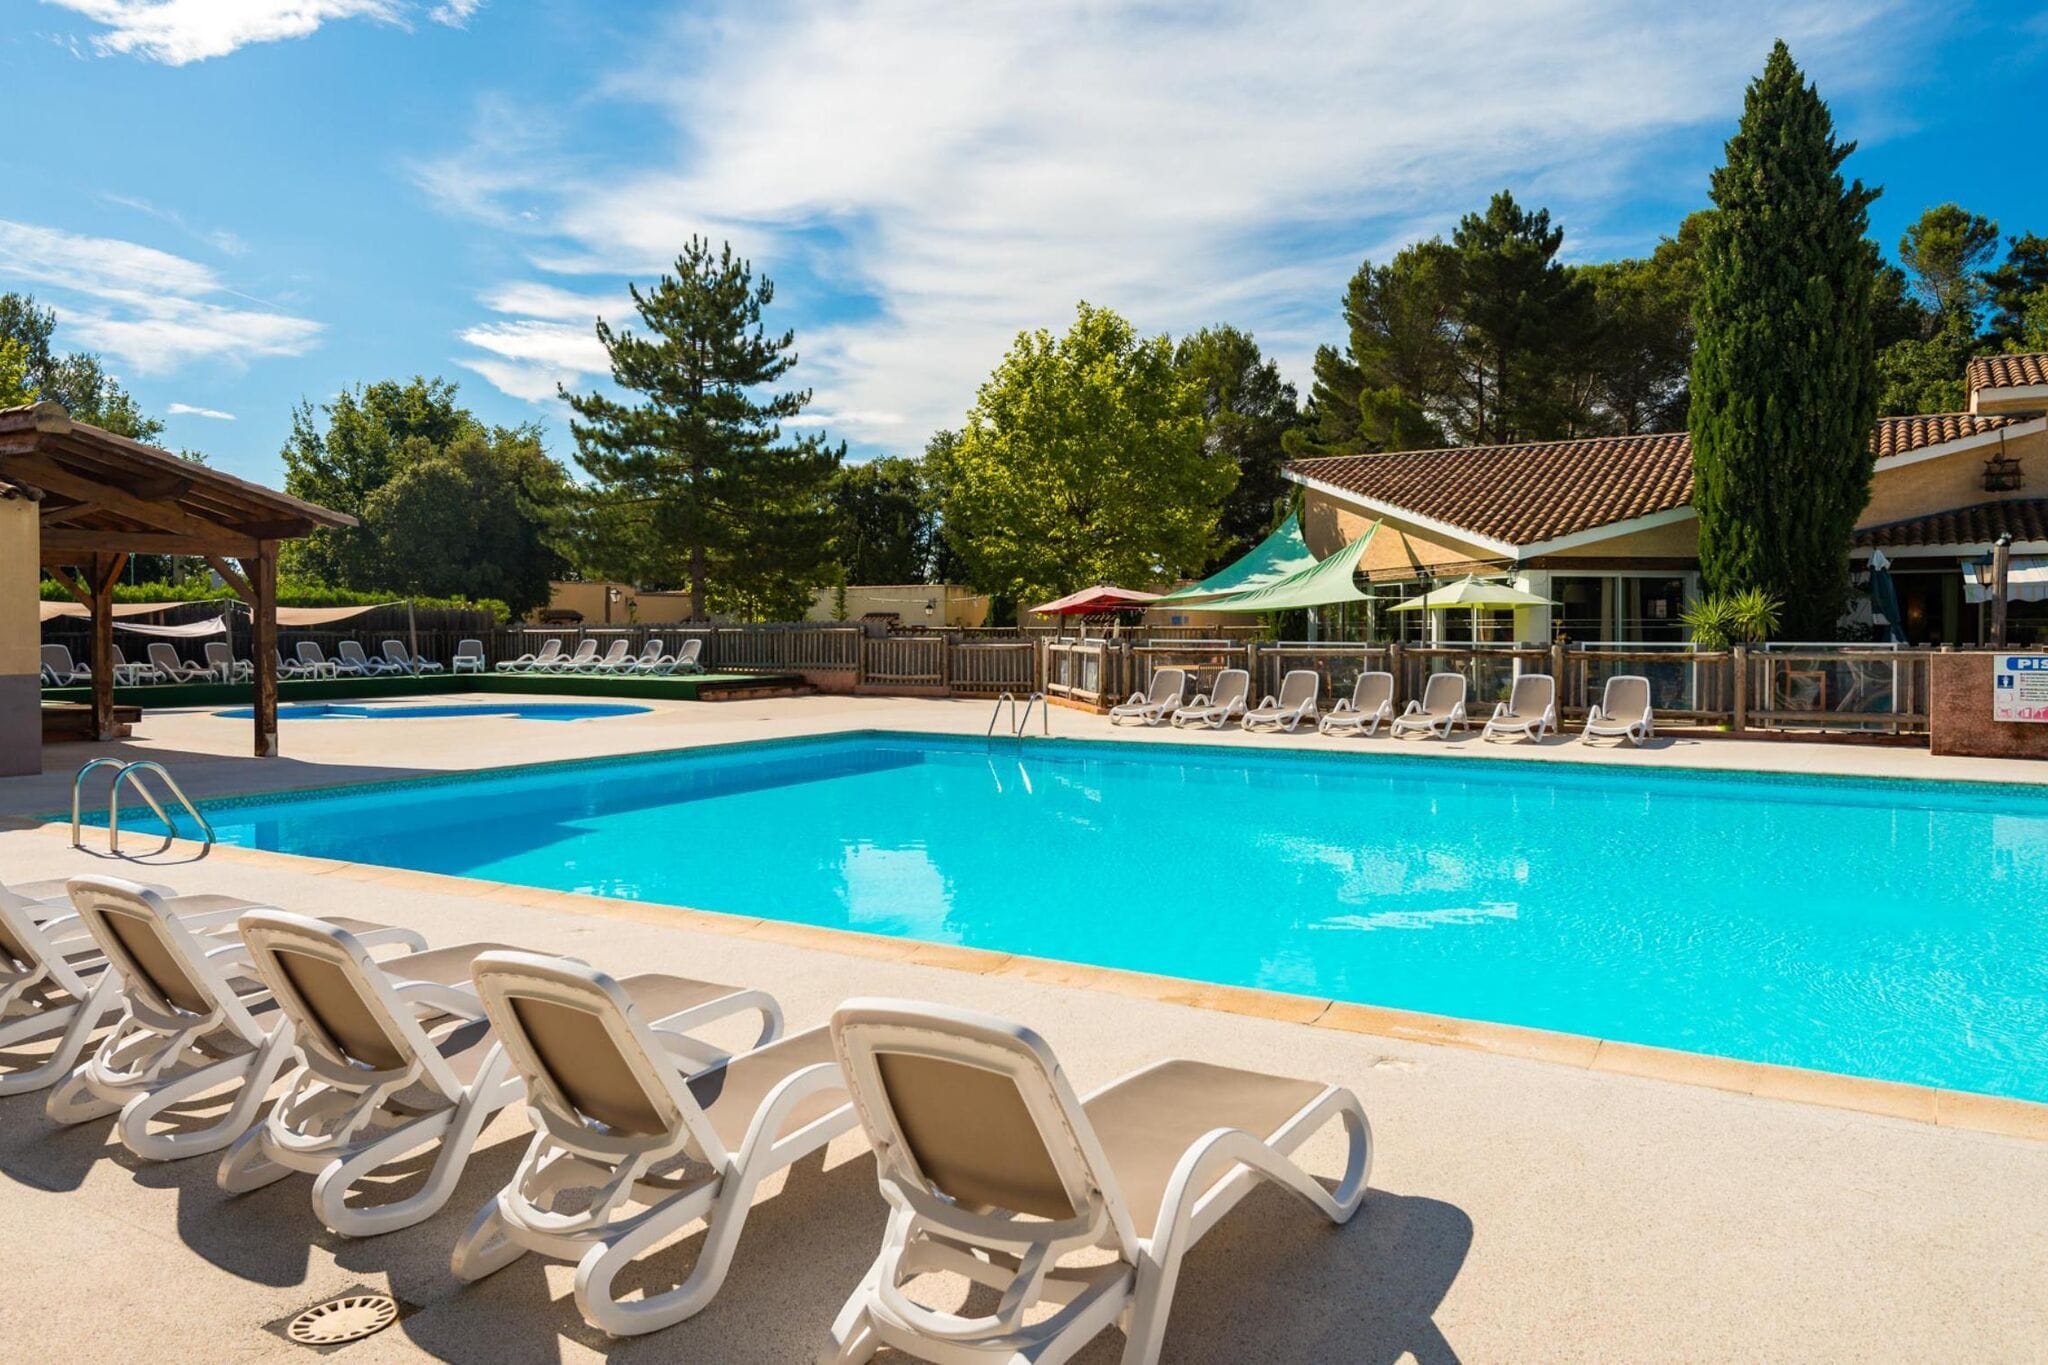 Maisonnette in Provençaalse stijl met groot gemeenschappelijk zwembad